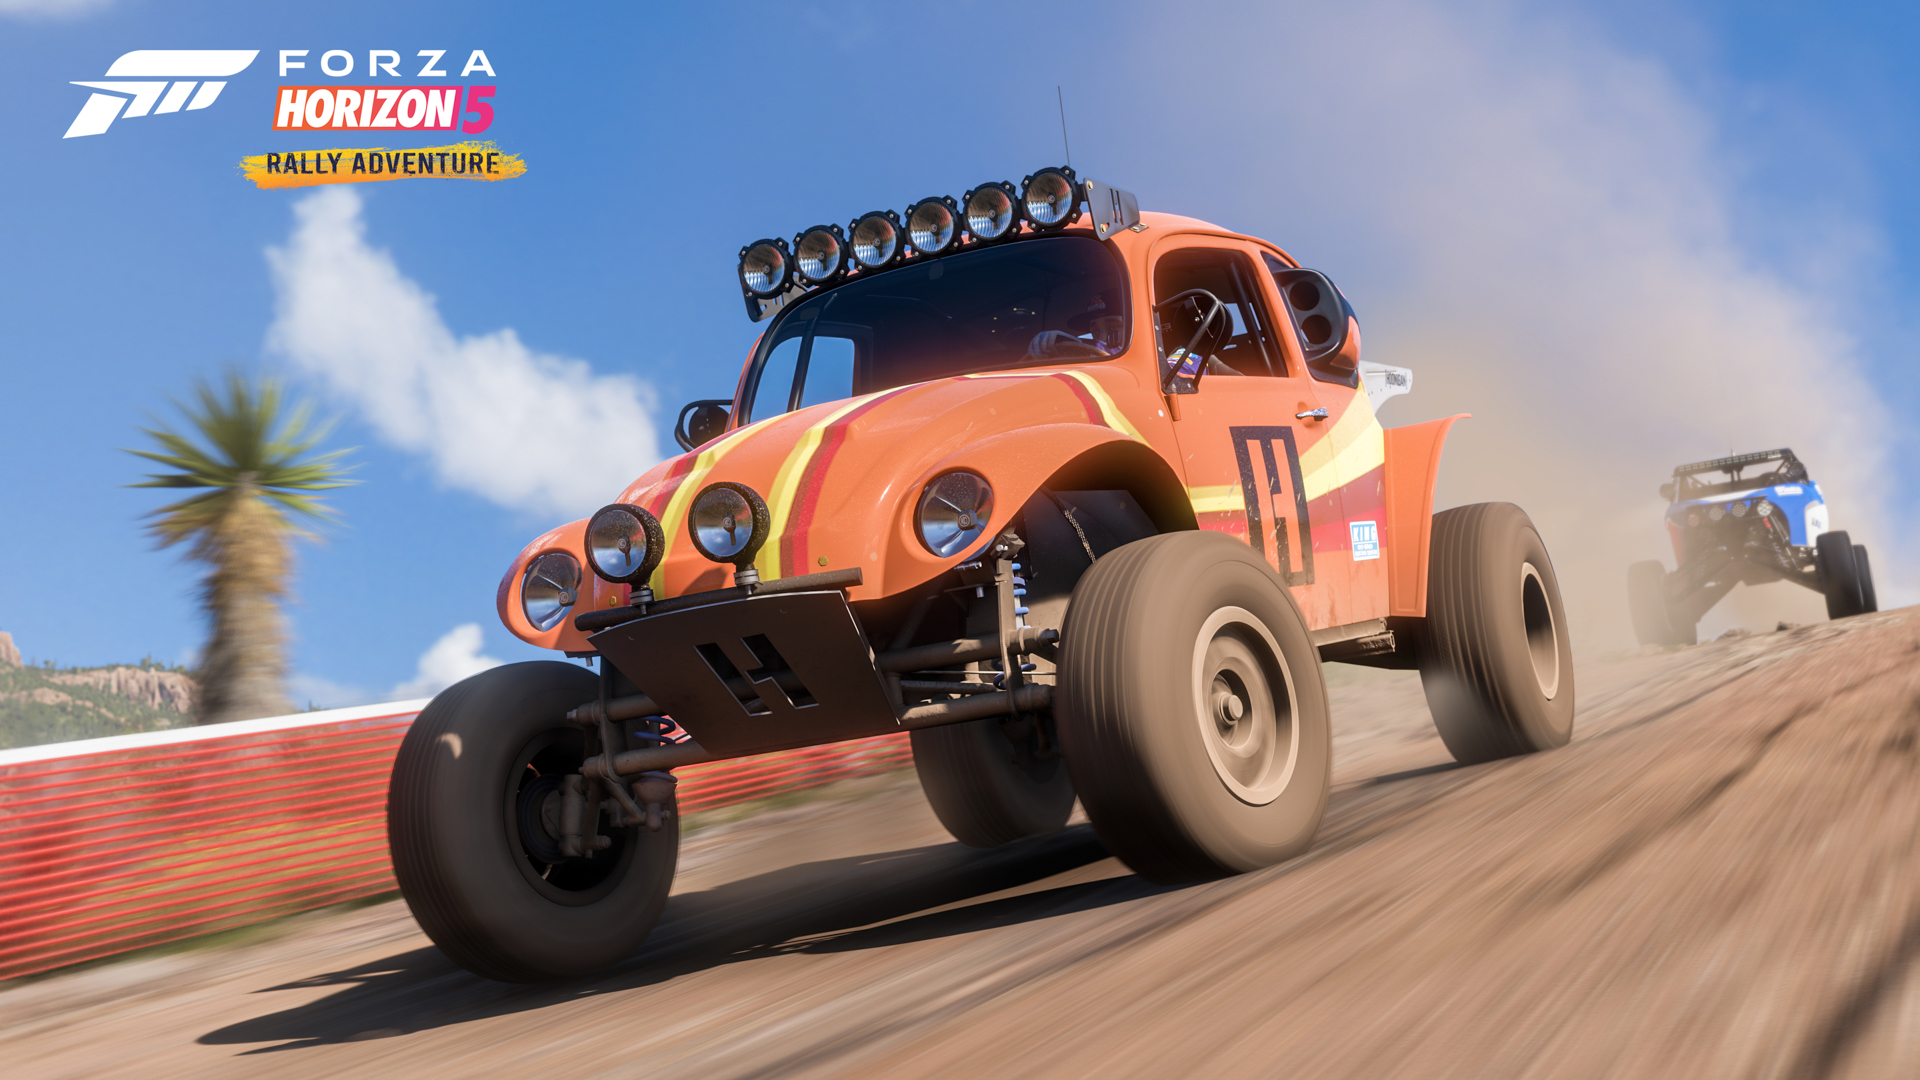 Der neue Forza Horizon 5-DLC Rallye-Abenteuer ist ab sofort verfügbar